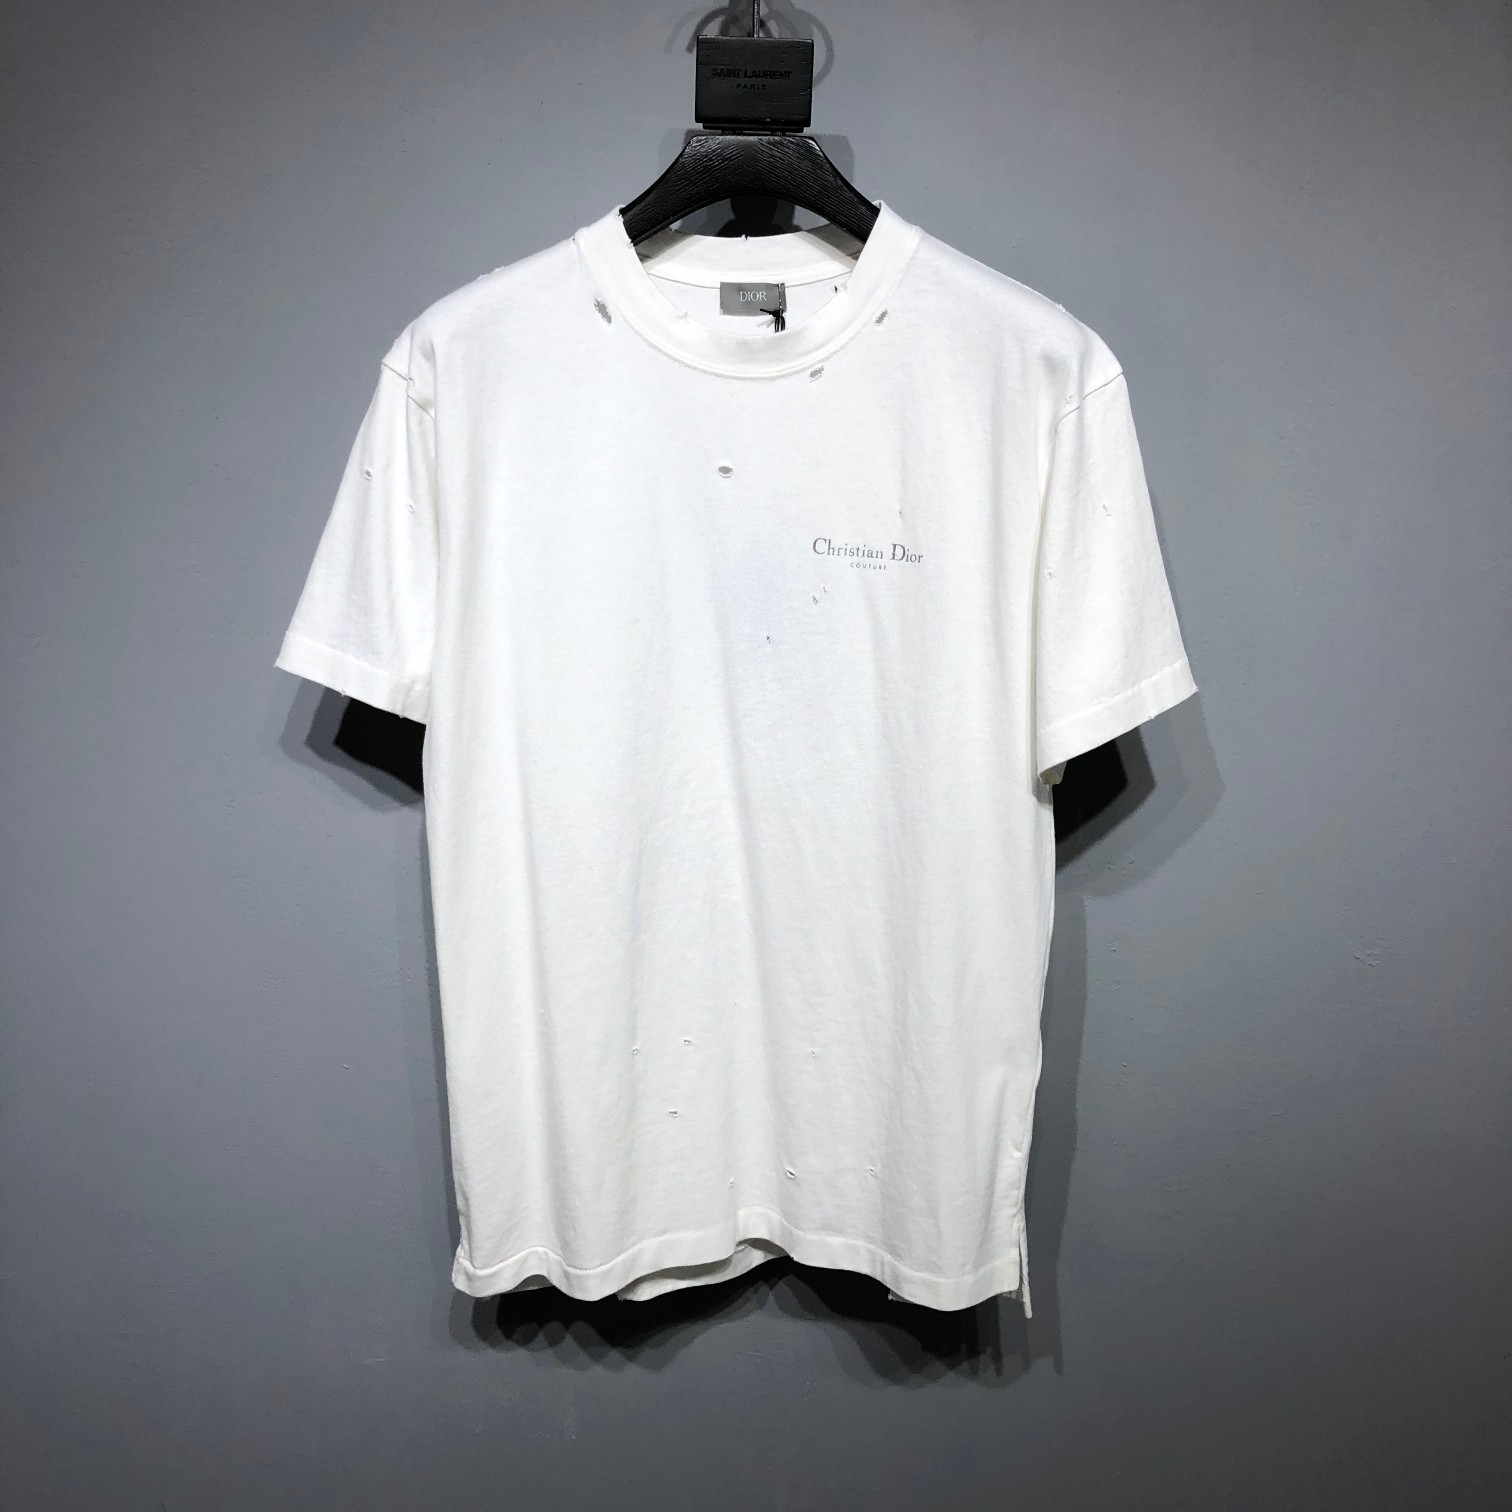 驚きの破格値人気のディオール半袖Tシャツn級品 ショートスリーブTシャツ_1